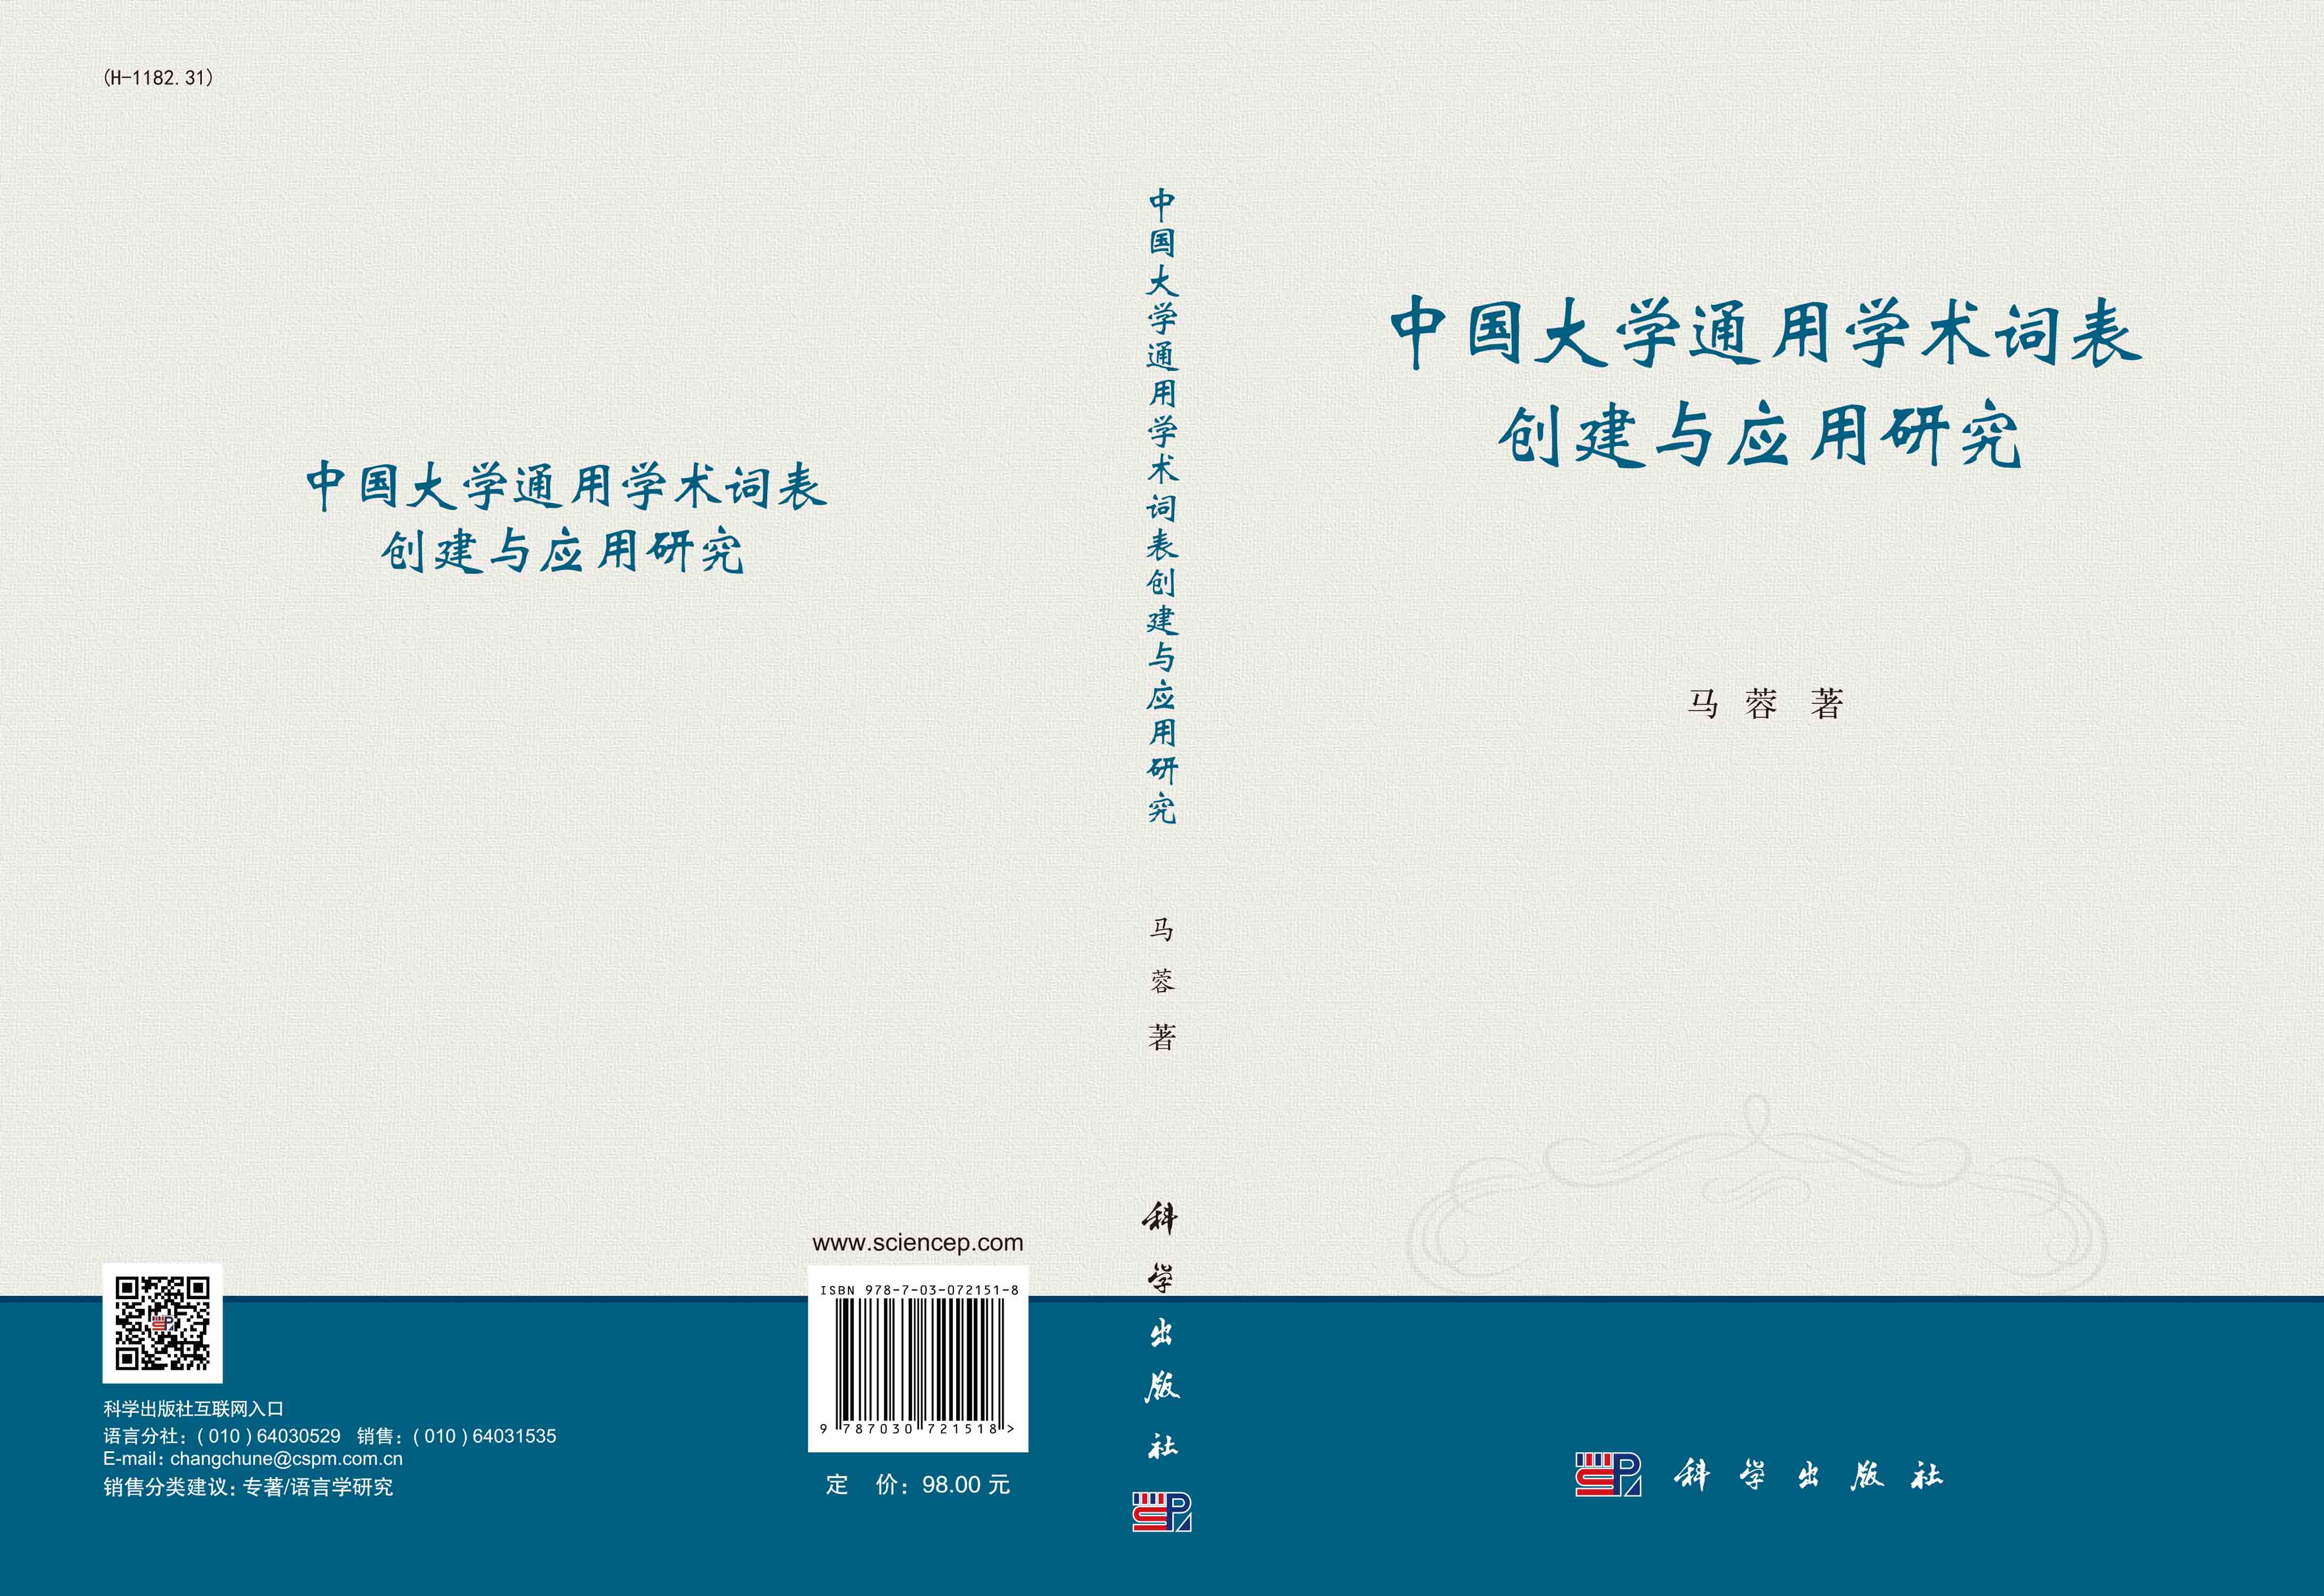 中国大学通用学术词表创建与应用研究